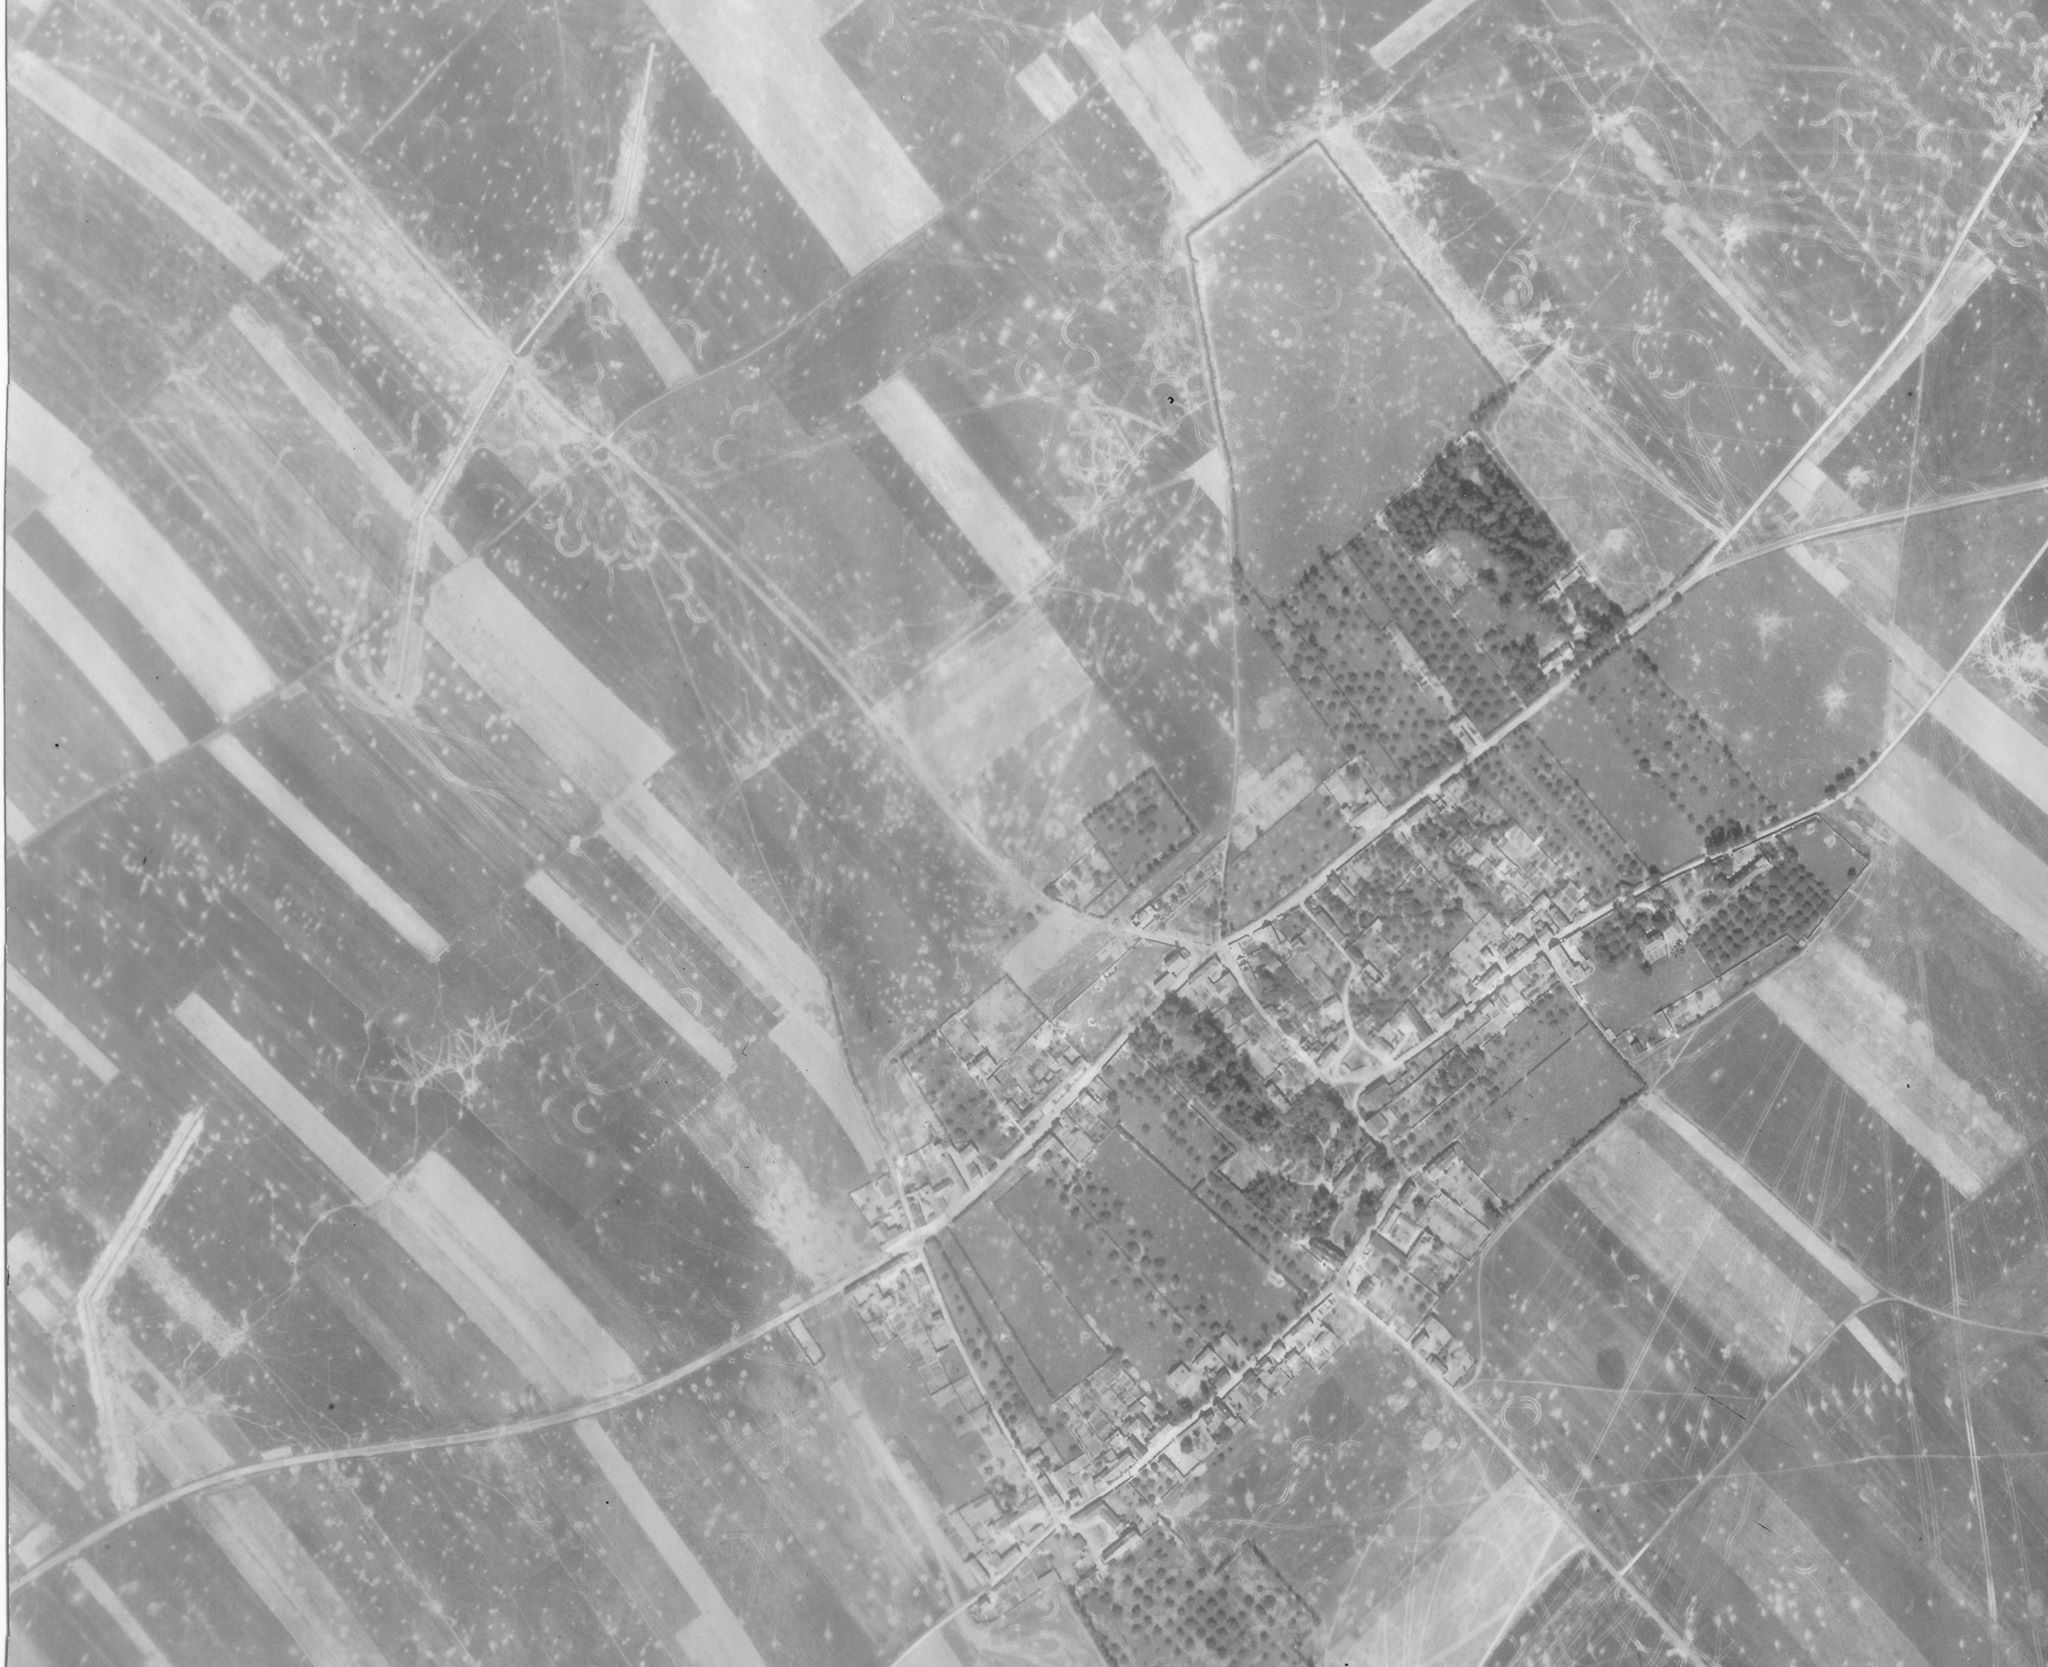 Une photo de reconnaissance aérienne de Buron, prise le 24 juin 1944, montrant clairement les fossés antichars que les Allemands ont construits pour la défense du village. Les traces de chars et les cratères indiquent les violents combats dans la région (LCMSDS Air Photo Collection 307/408…